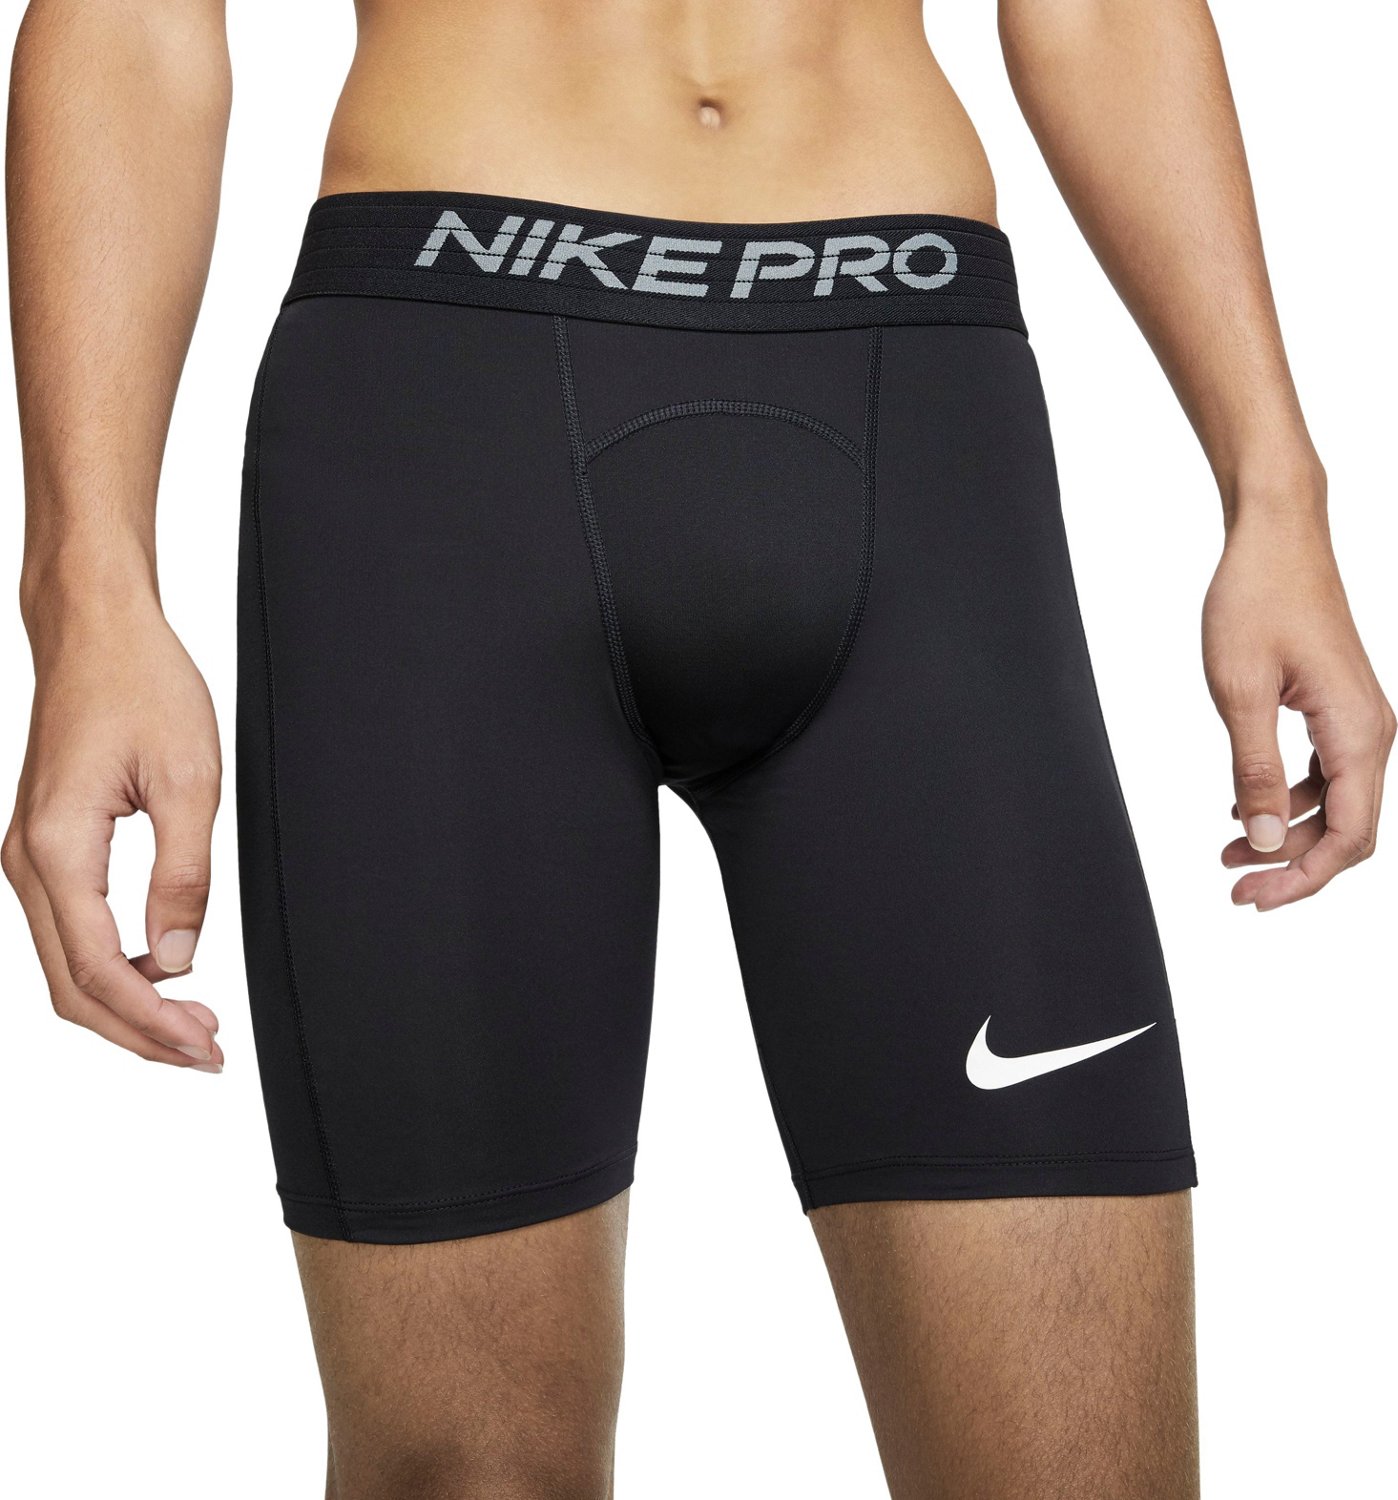 nike pro shorts academy sports